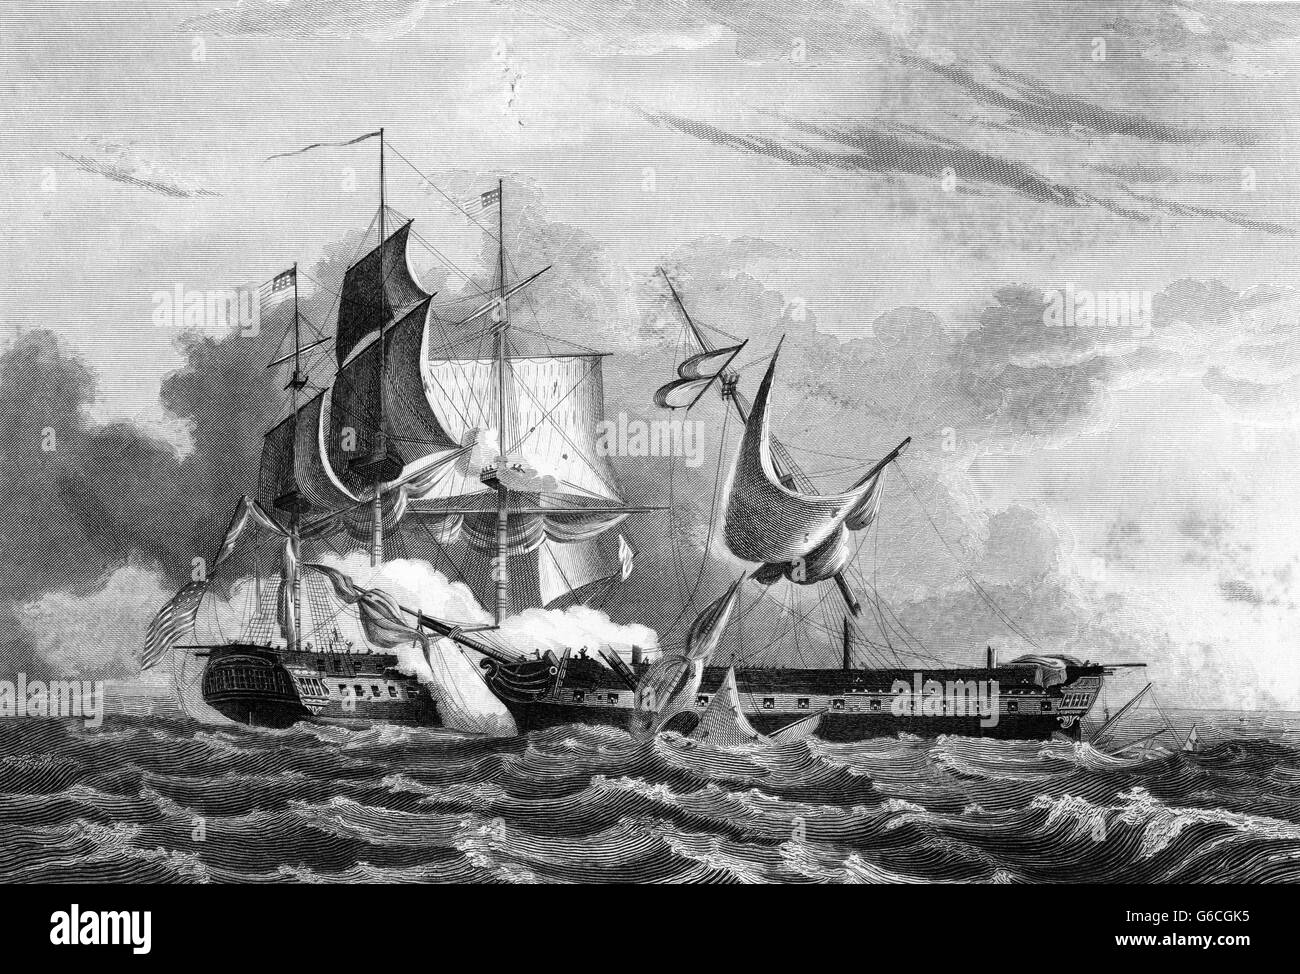 Les États-unis IRONSIDES ANCIENNE CONSTITUTION FRÉGATE LA CAPTURE LE NAVIRE HMS GURRIERE DURANT LA GUERRE DE 1812 Banque D'Images